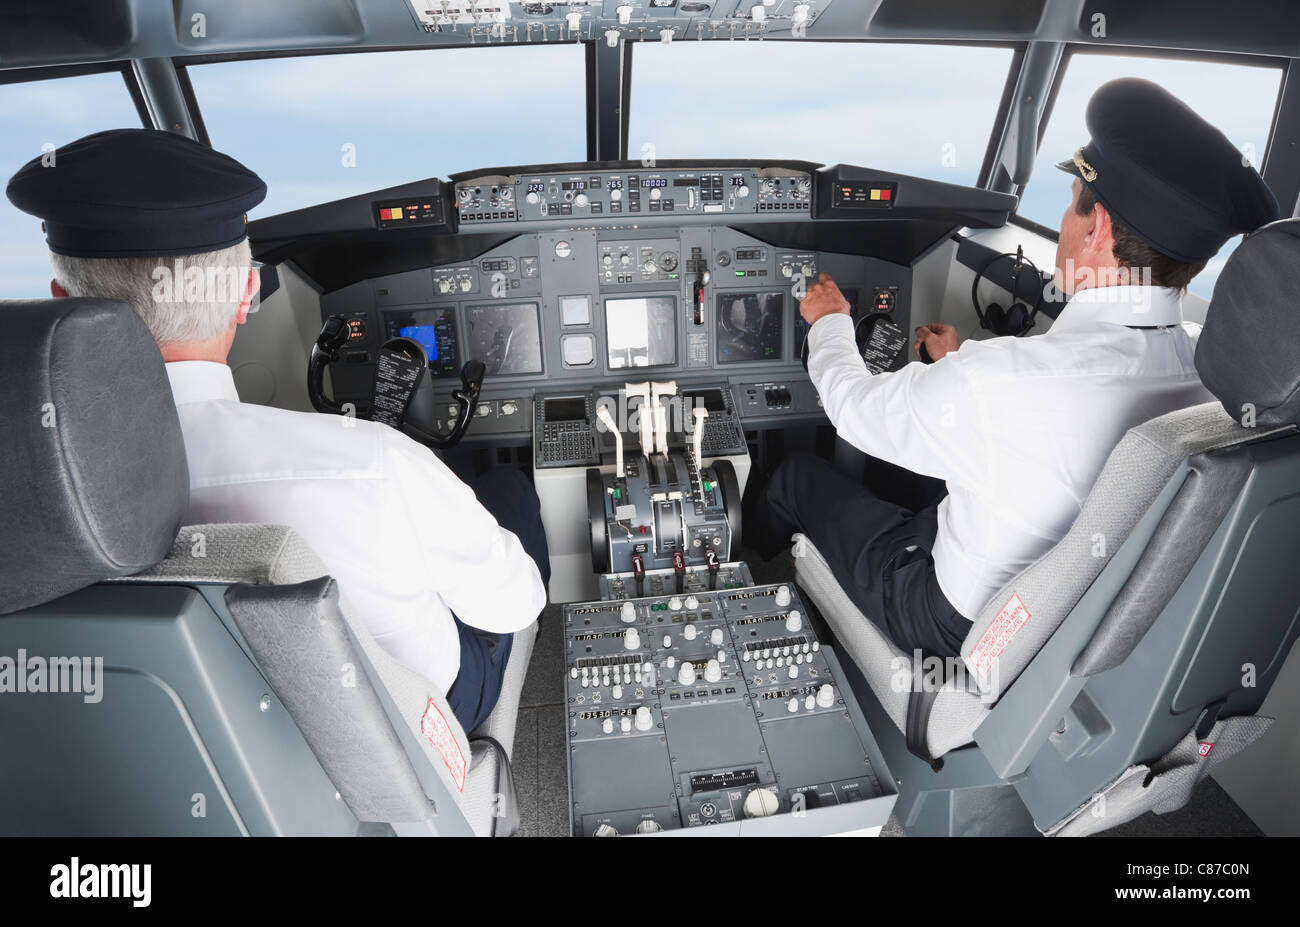 Alemania, Baviera, Munich, piloto y copiloto pilotar aviones de cabina de avión Foto de stock